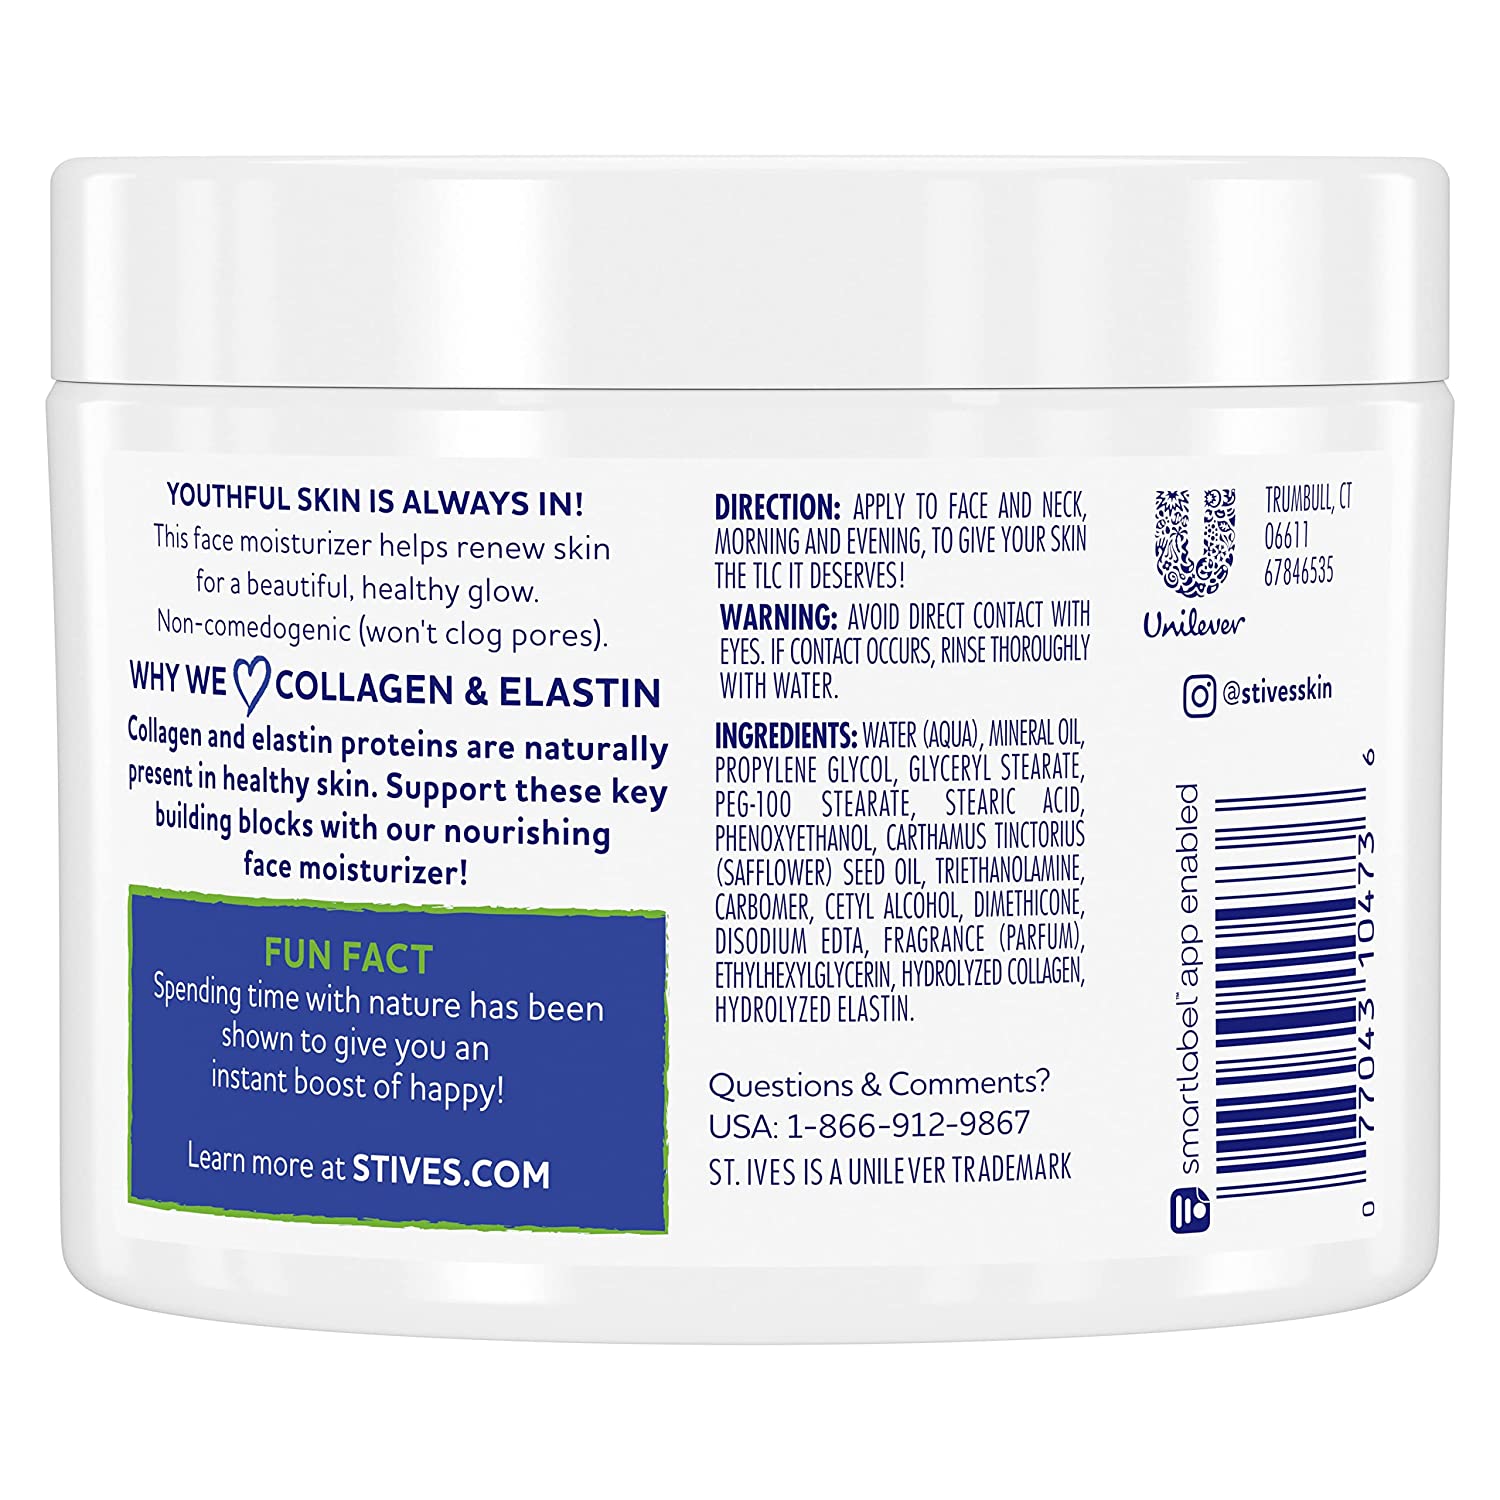 St. Ives Timeless Skin Collagen Elastin Moisturizer, 10 oz (Pack of 2) - image 3 of 5